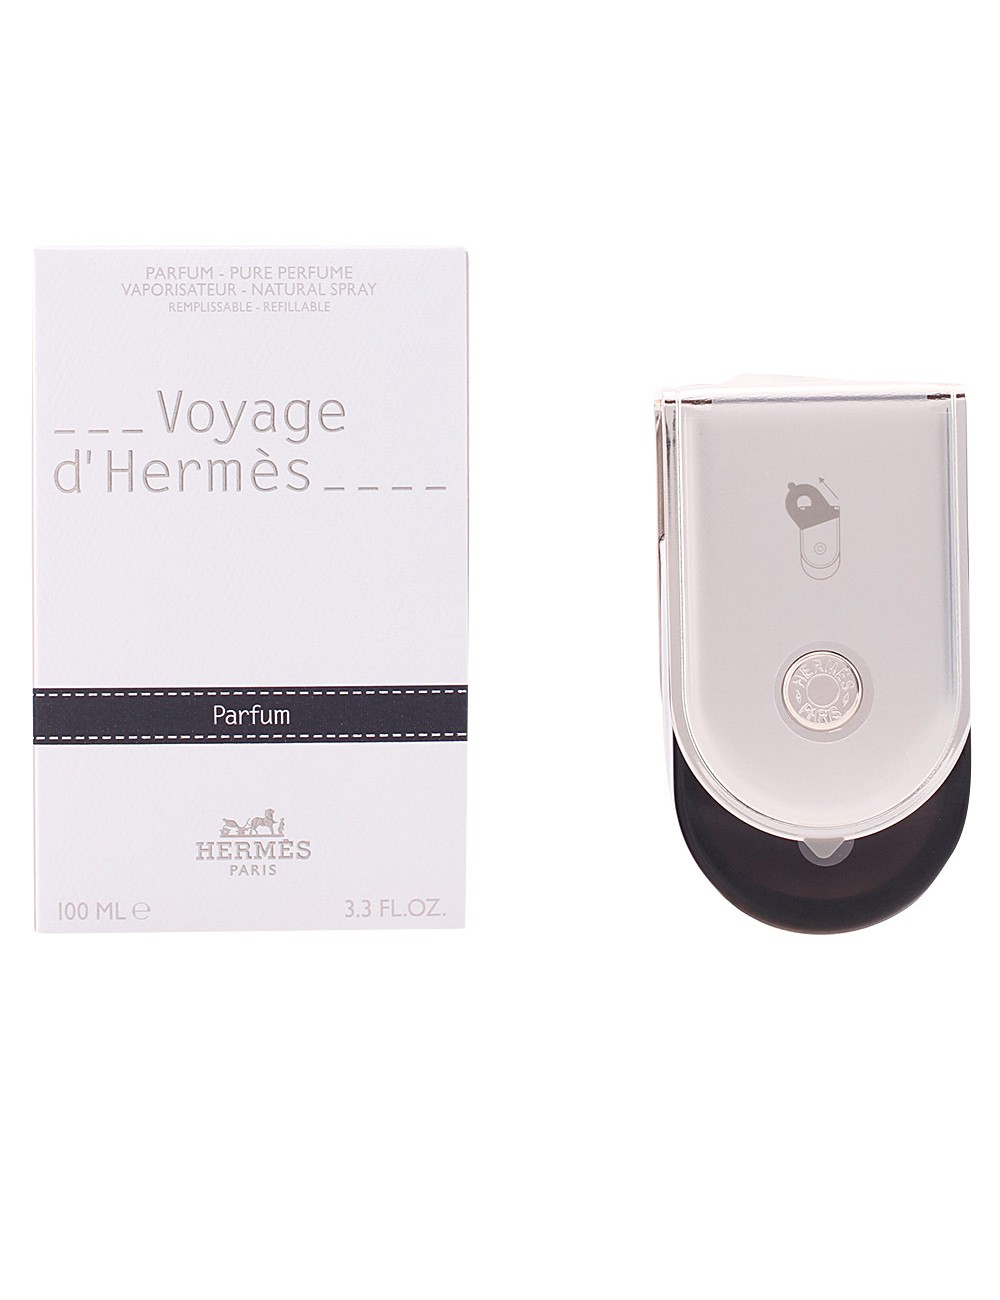 VOYAGE D'HERMÈS parfum vaporisateur 100 ml NE37116